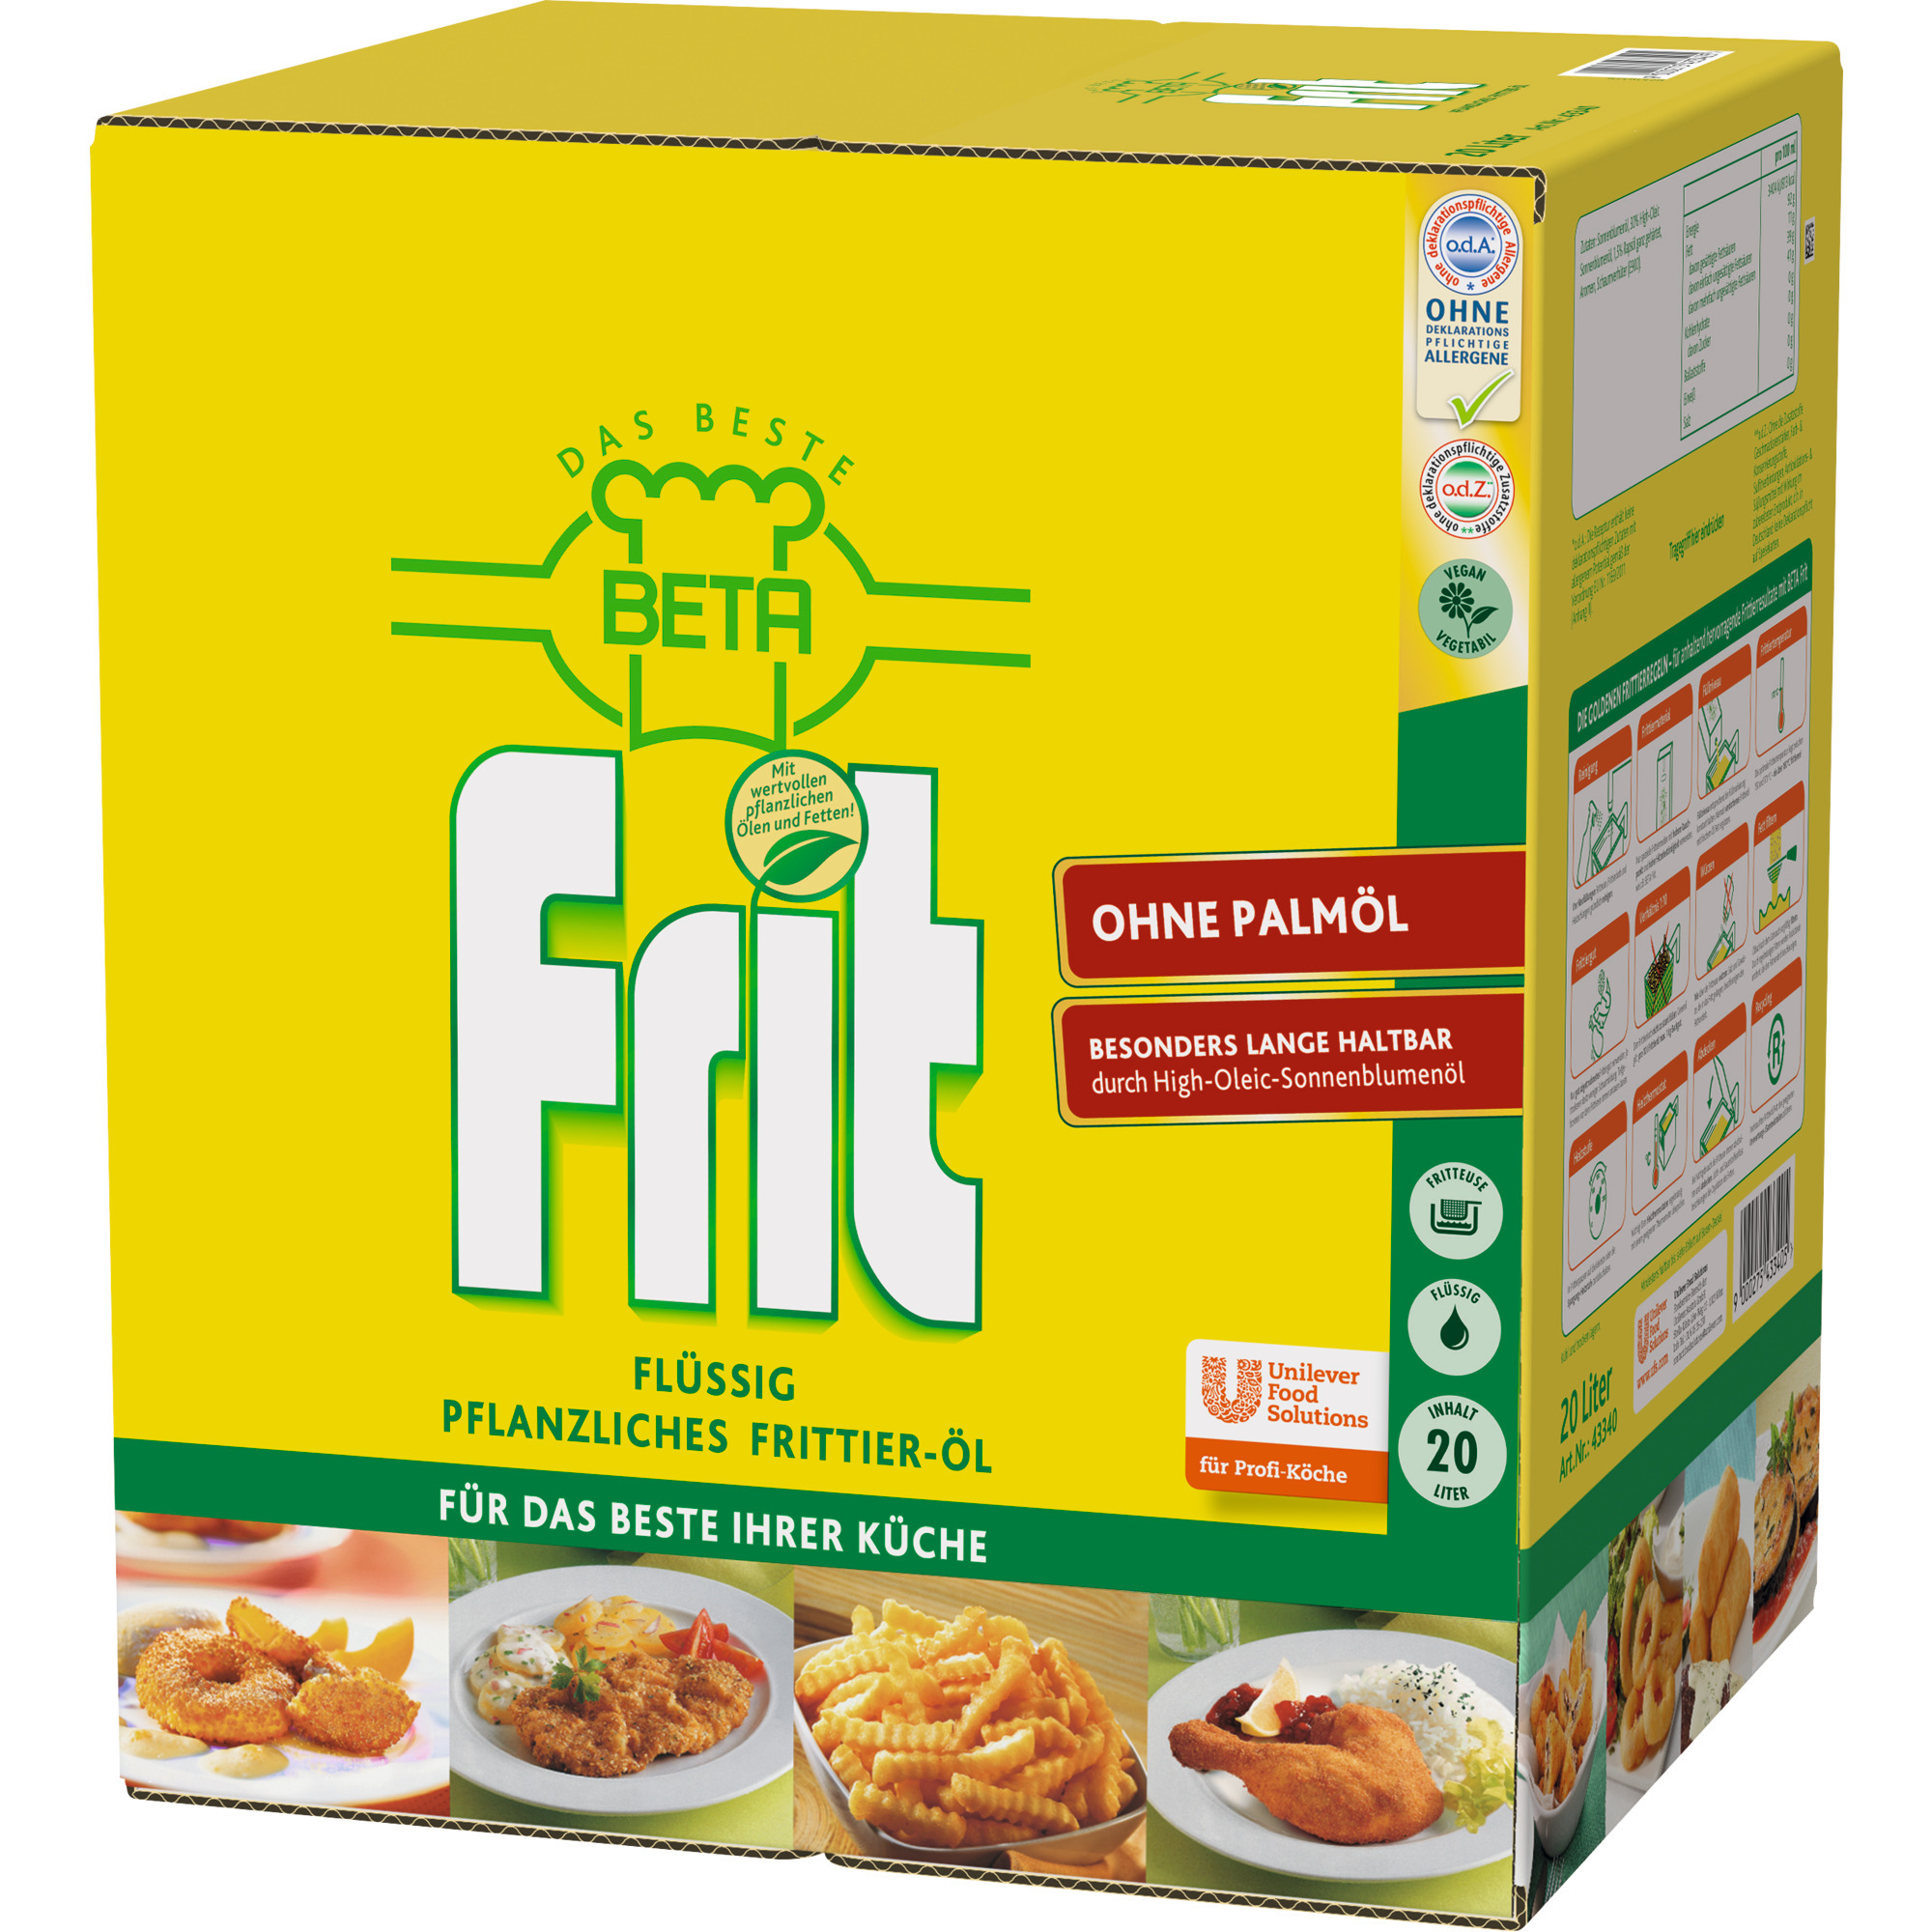 Beta Frit Frittierfett BiB 20L